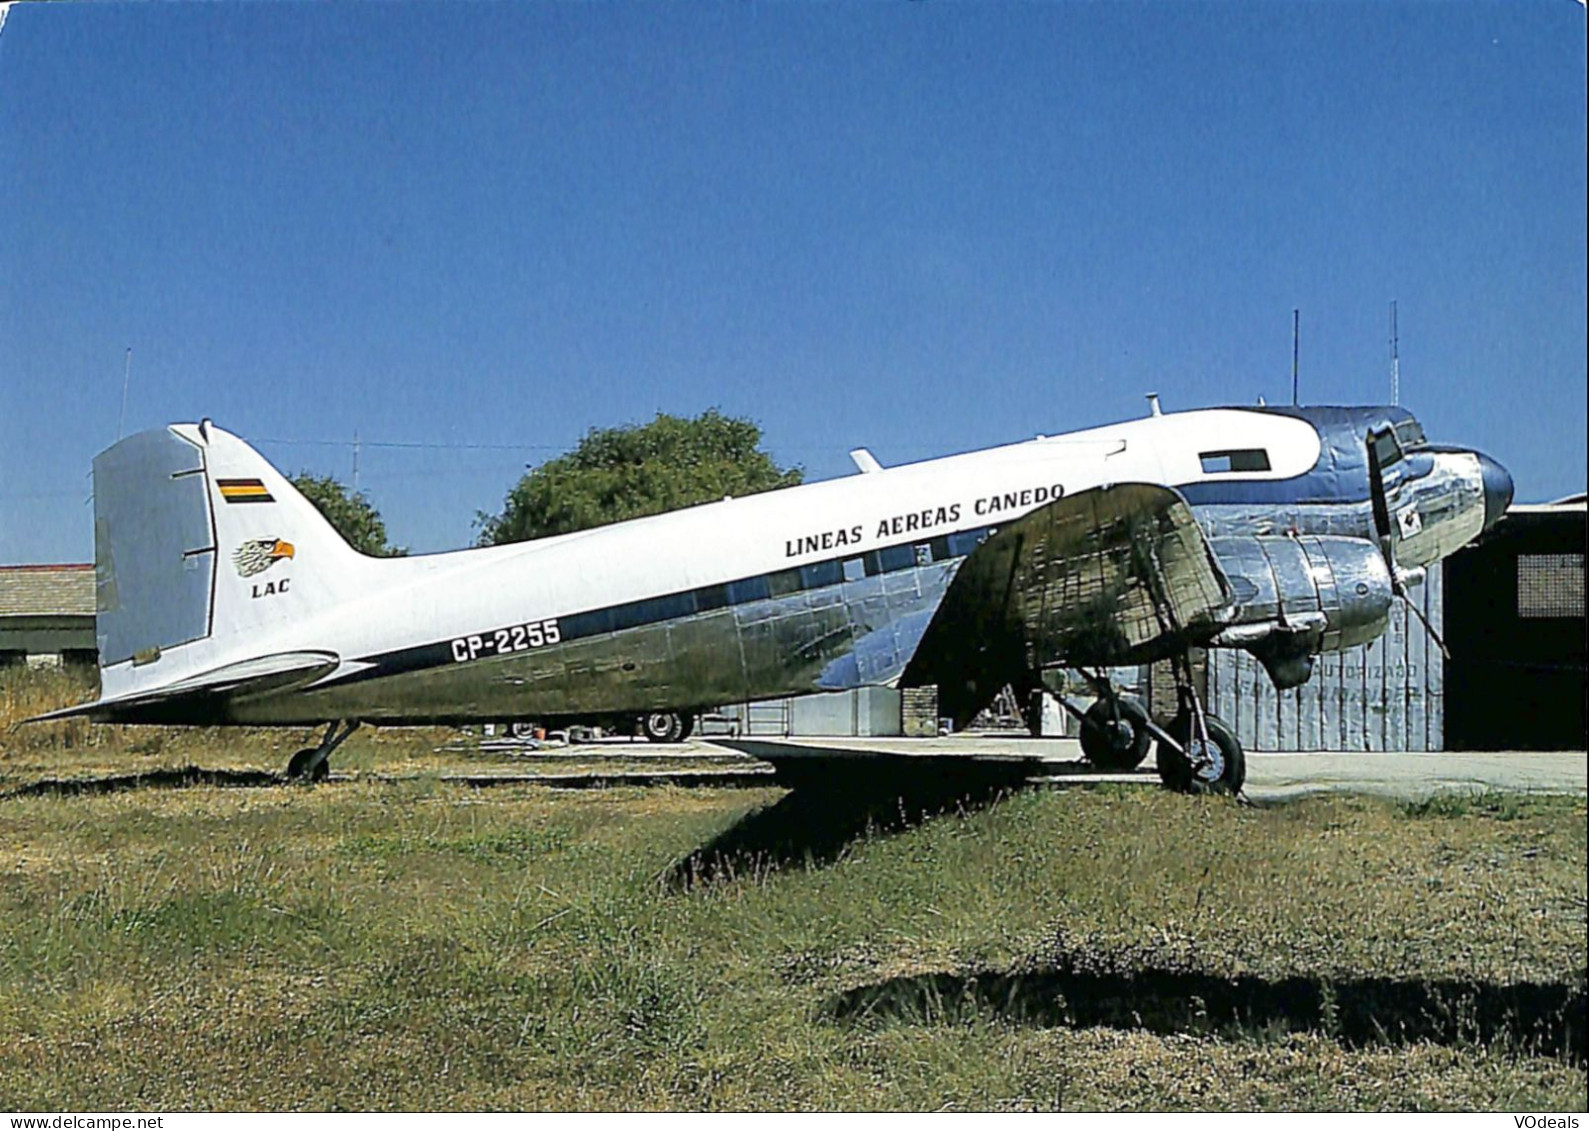 Belgique - Transports - Aviation - Avions - Lineas Aereas Canedo - DC-3C - CP-2255 - 1946-....: Ere Moderne